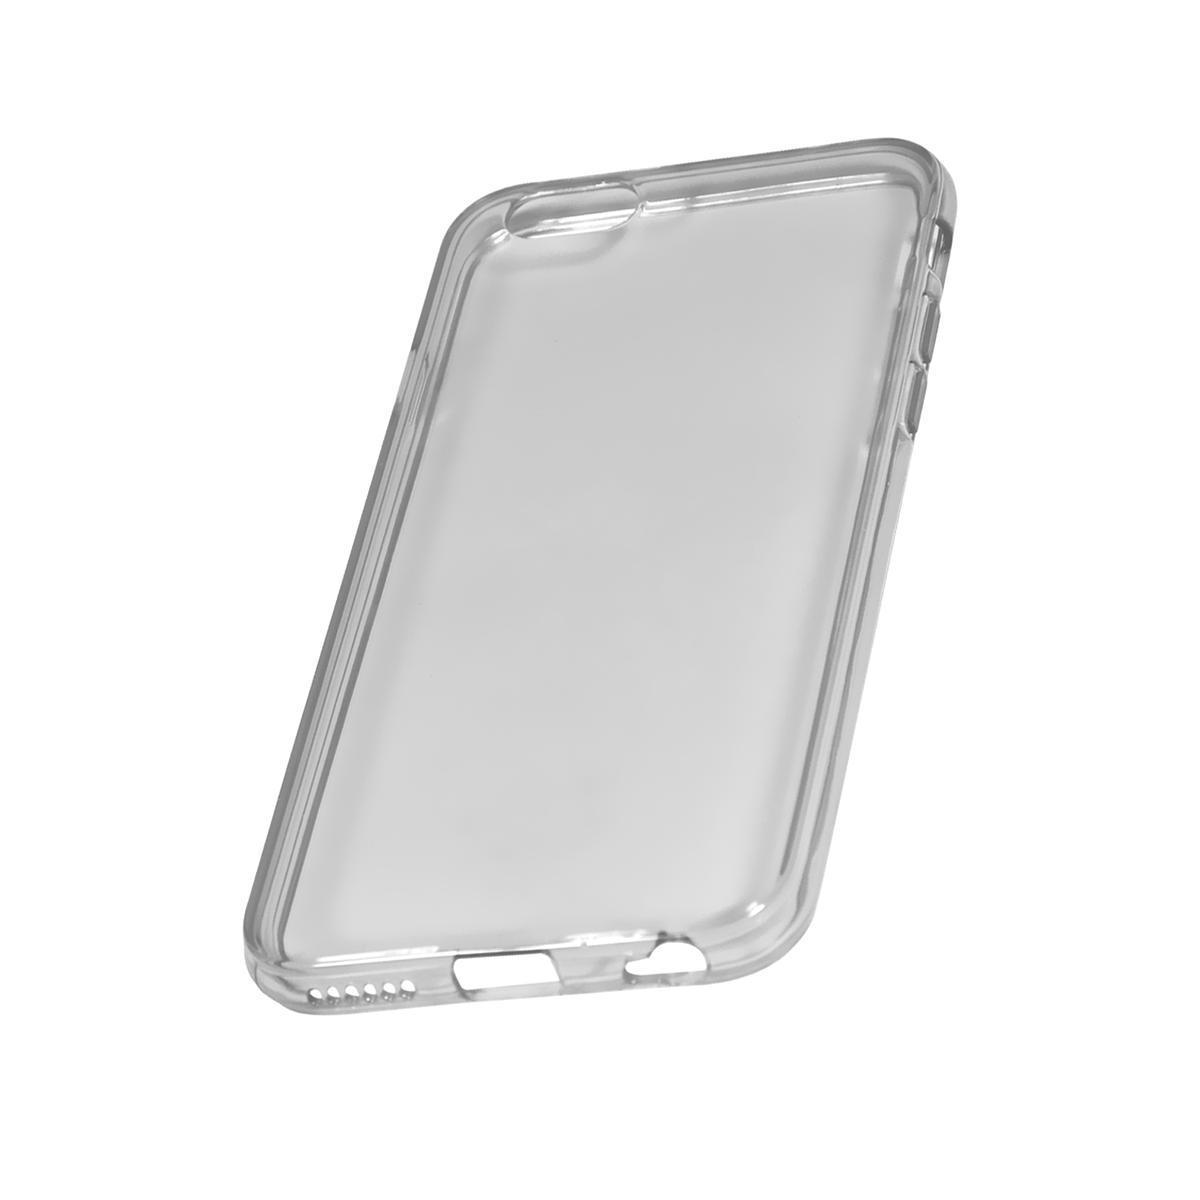 Coque de protection pour iPhone 6 - 14 x 7 cm - Différents coloris - Transparent fumé